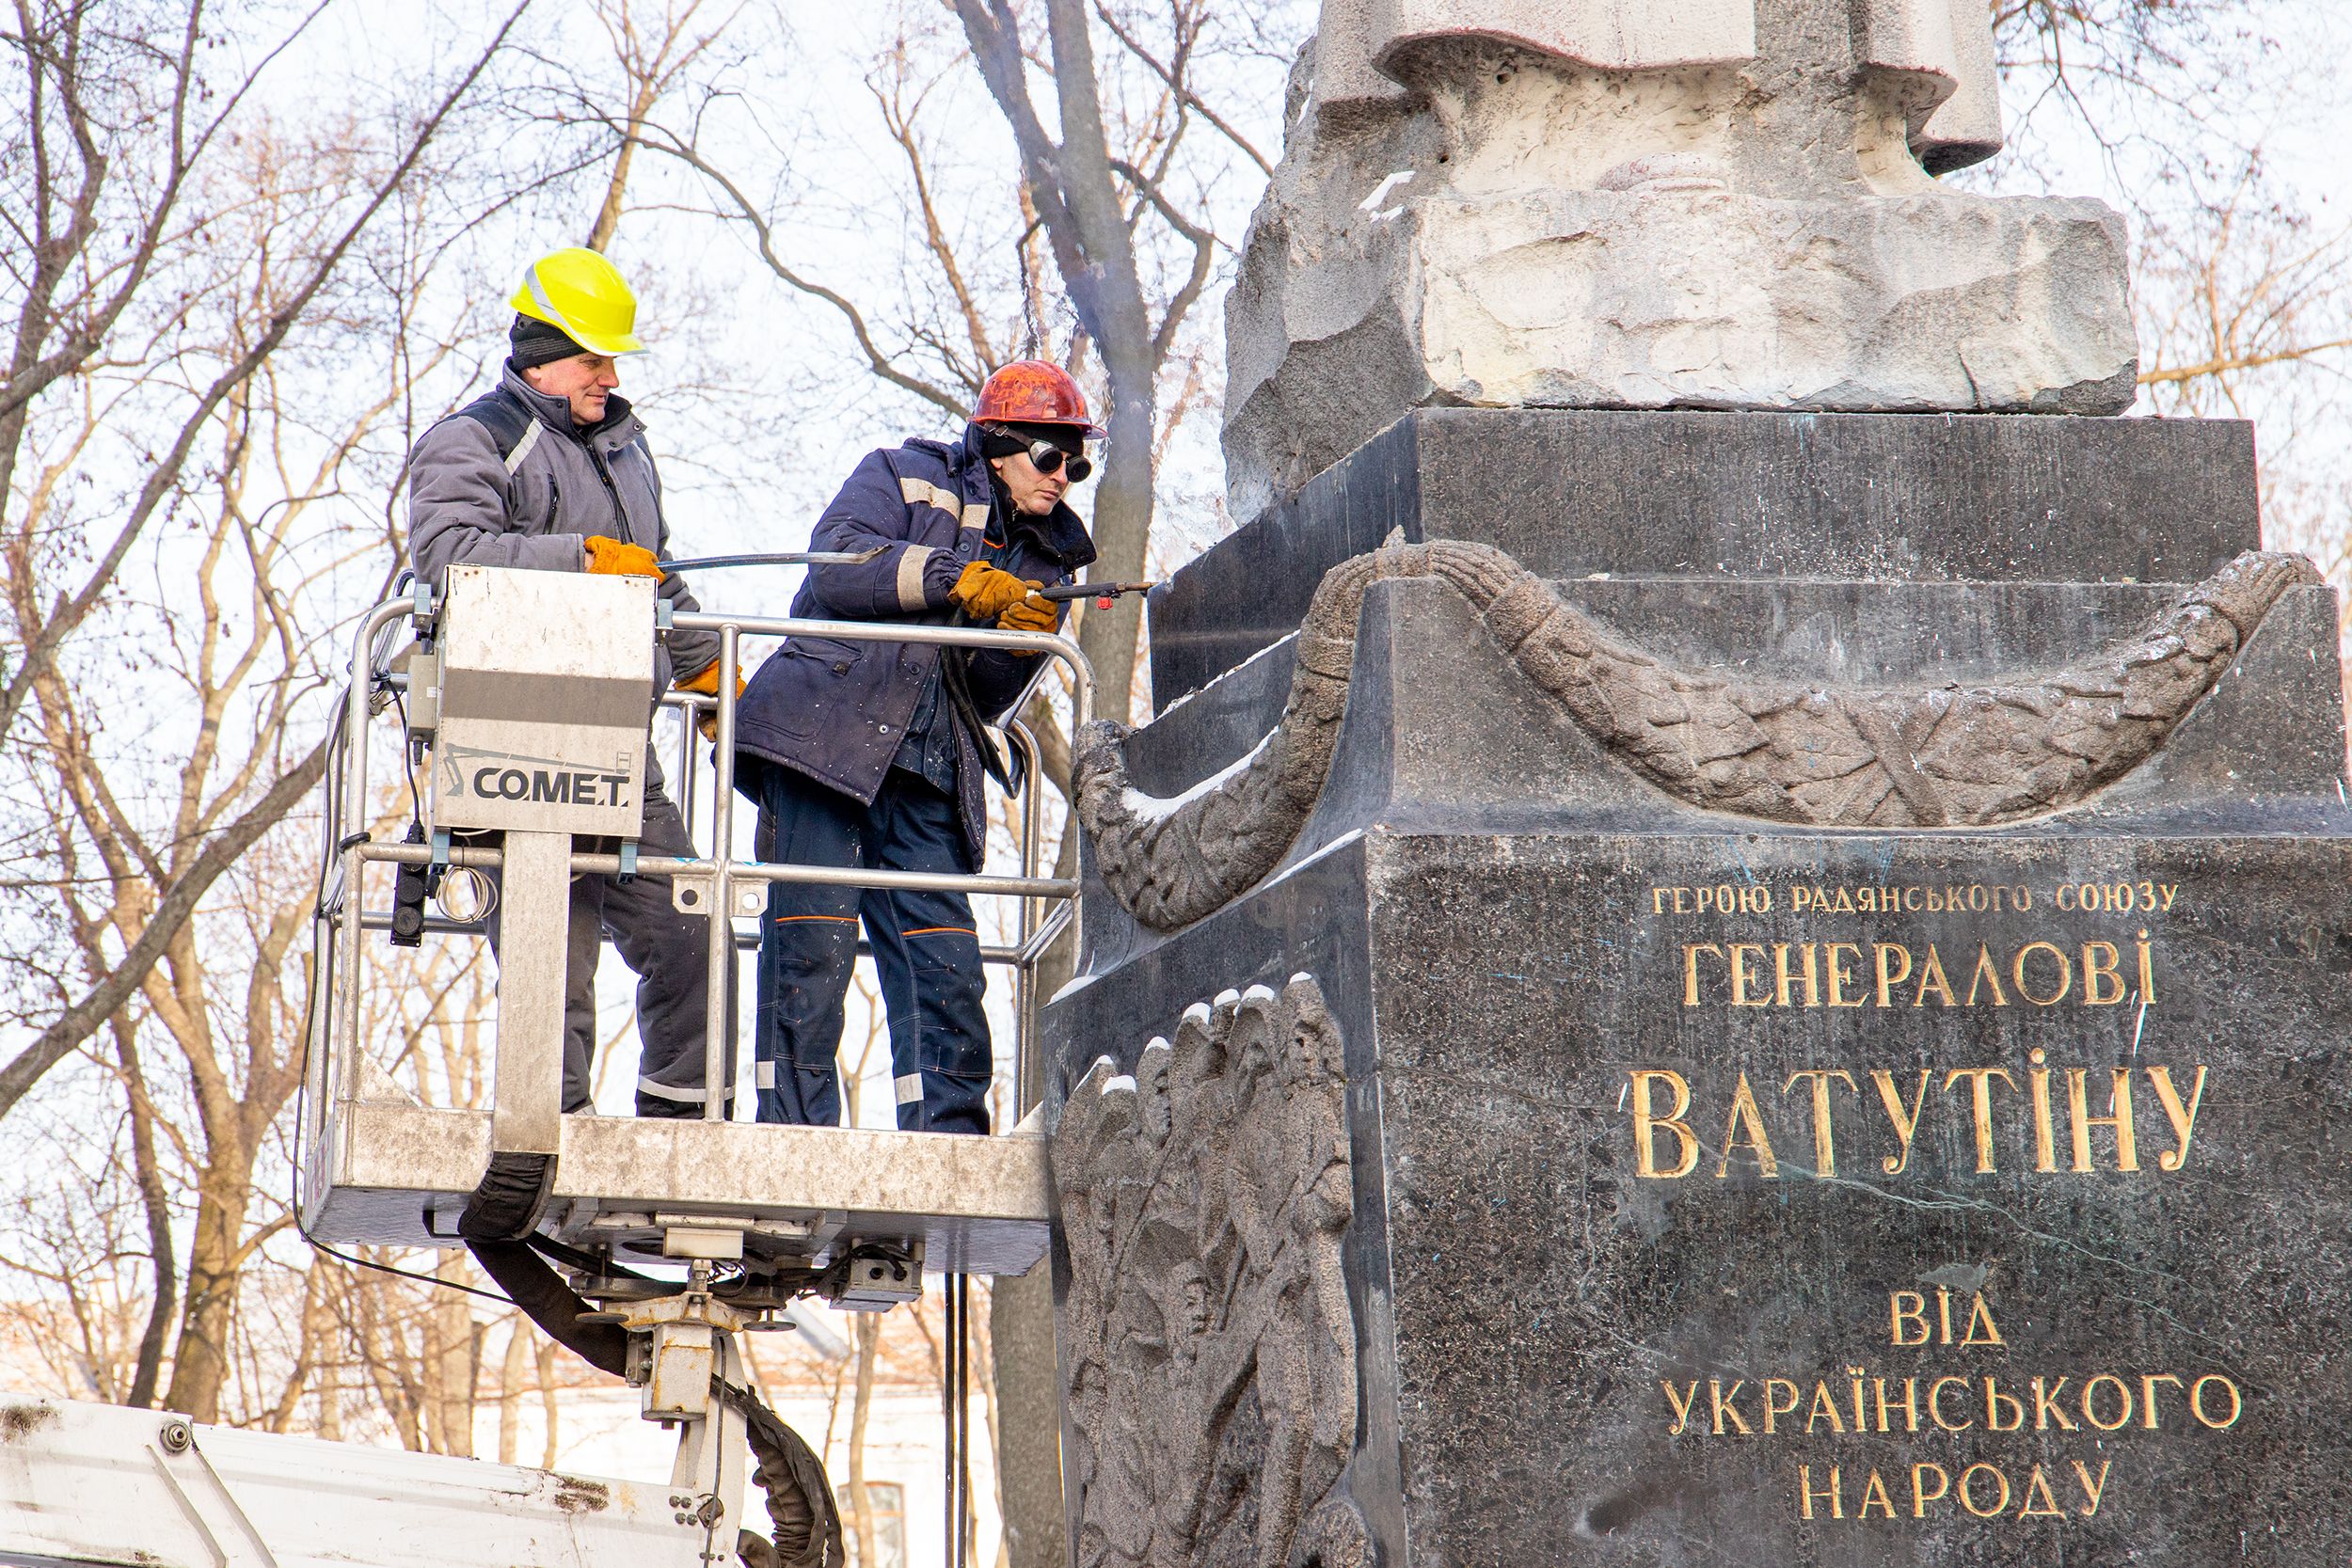 Після демонтажу пам'ятника Ватутіну в урядовому кварталі мають перепоховати і його прах.